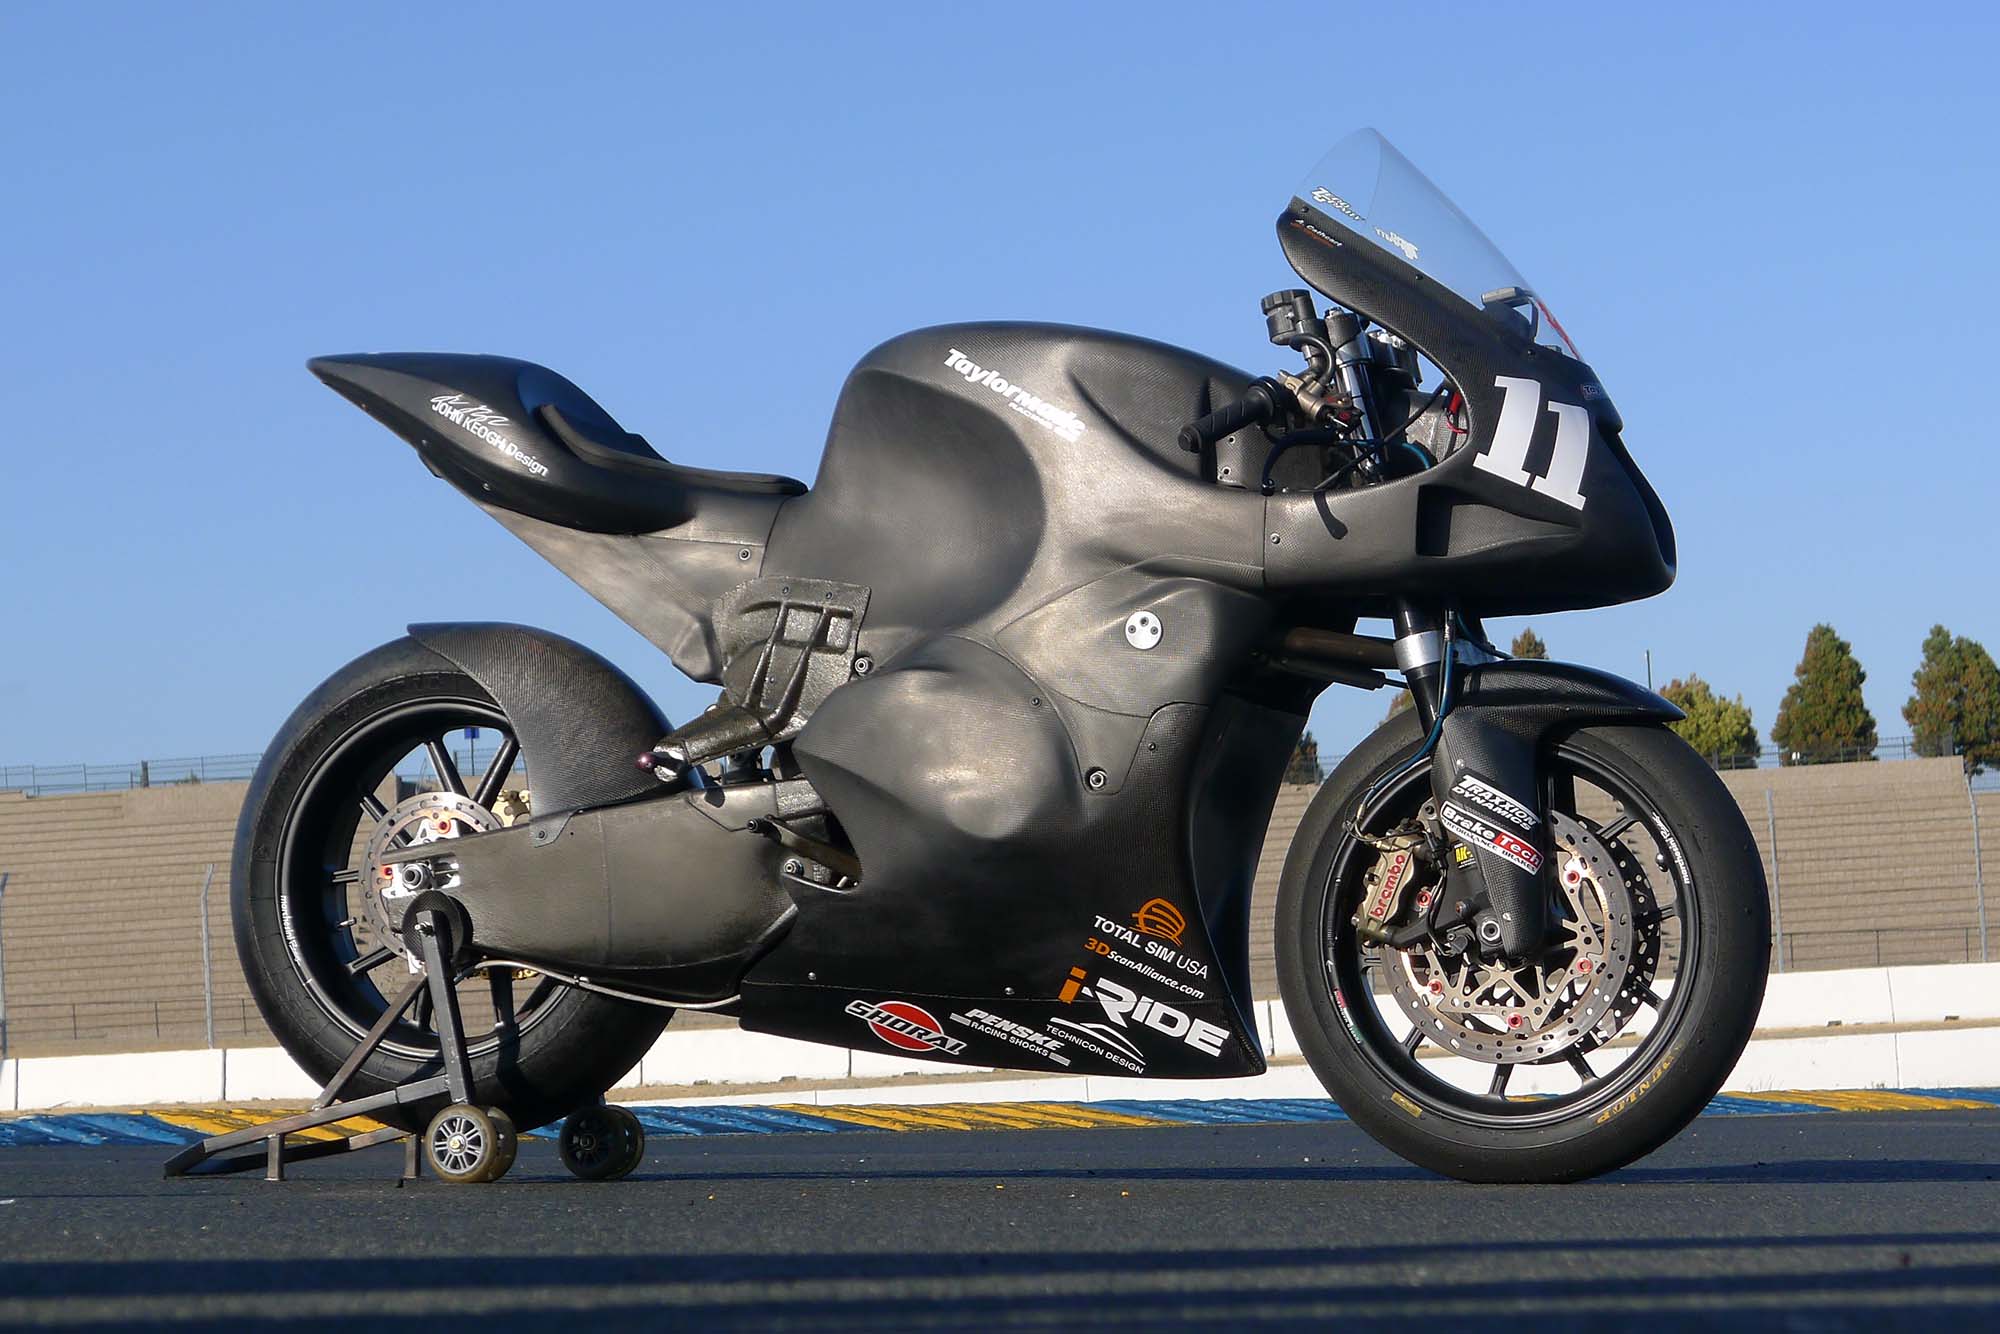 Taylormade-Carbon2-moto2-race-bike-01.jpg